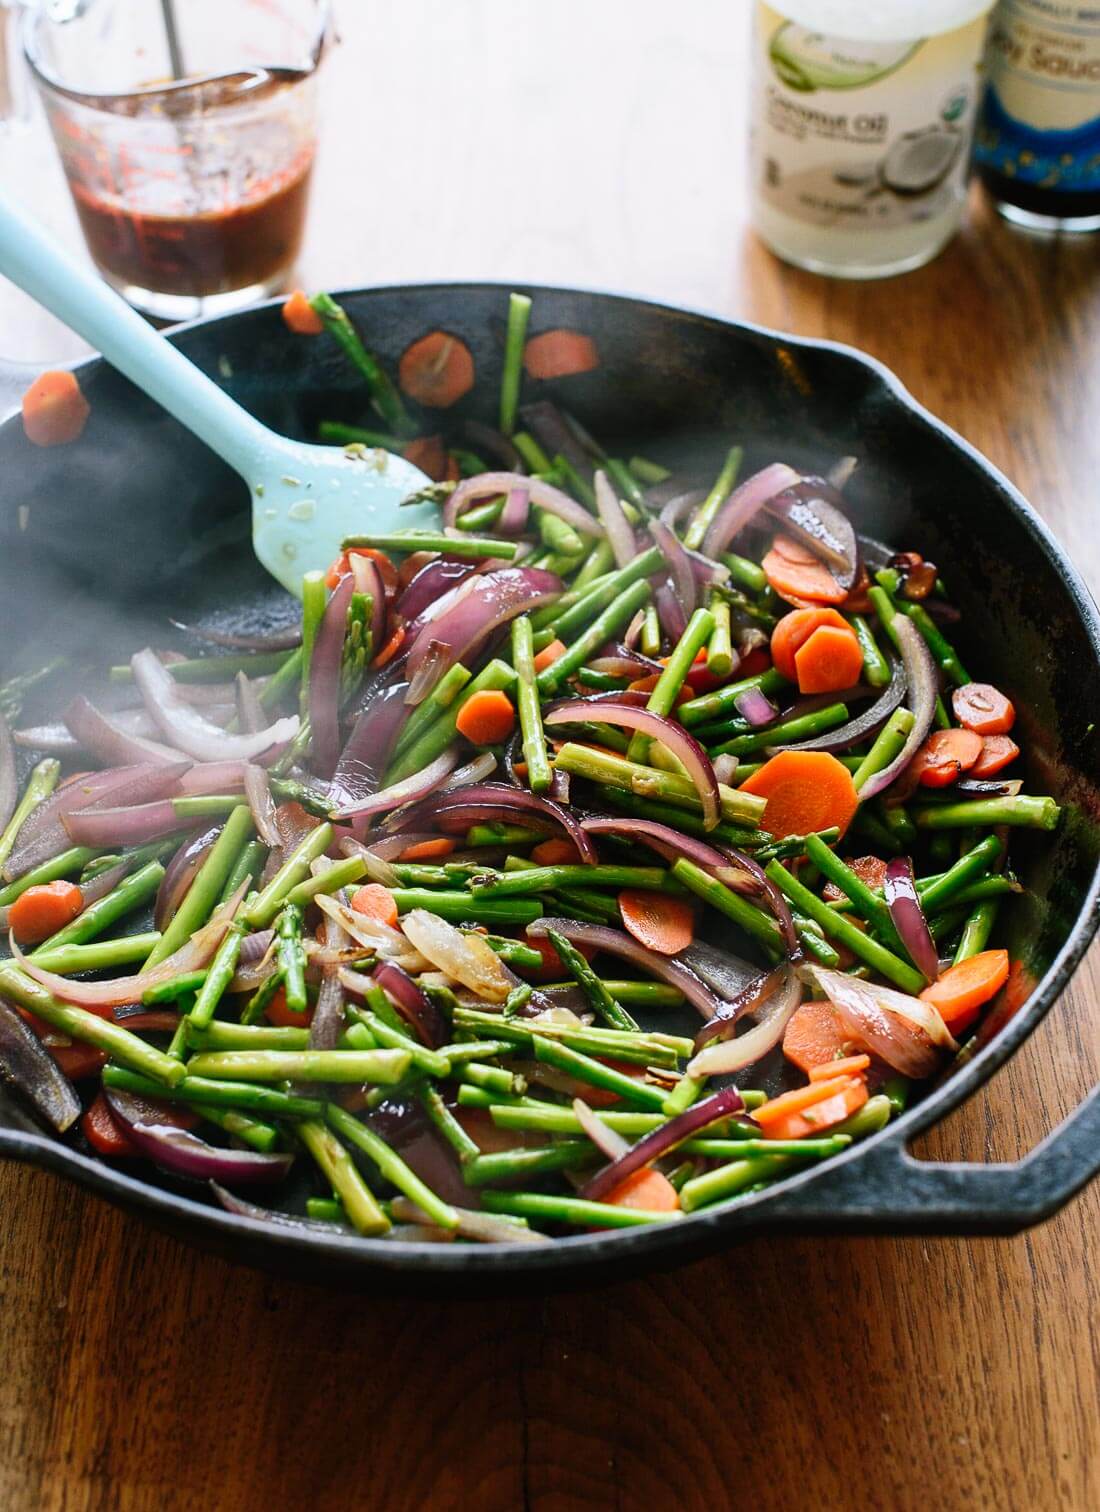 Šis daržovių kepimo receptas paruošiamas akimirksniu!  Kad šis garnyras taptų visaverčiu patiekalu, patiekite su rudaisiais ryžiais ir pasirinktais baltymais.